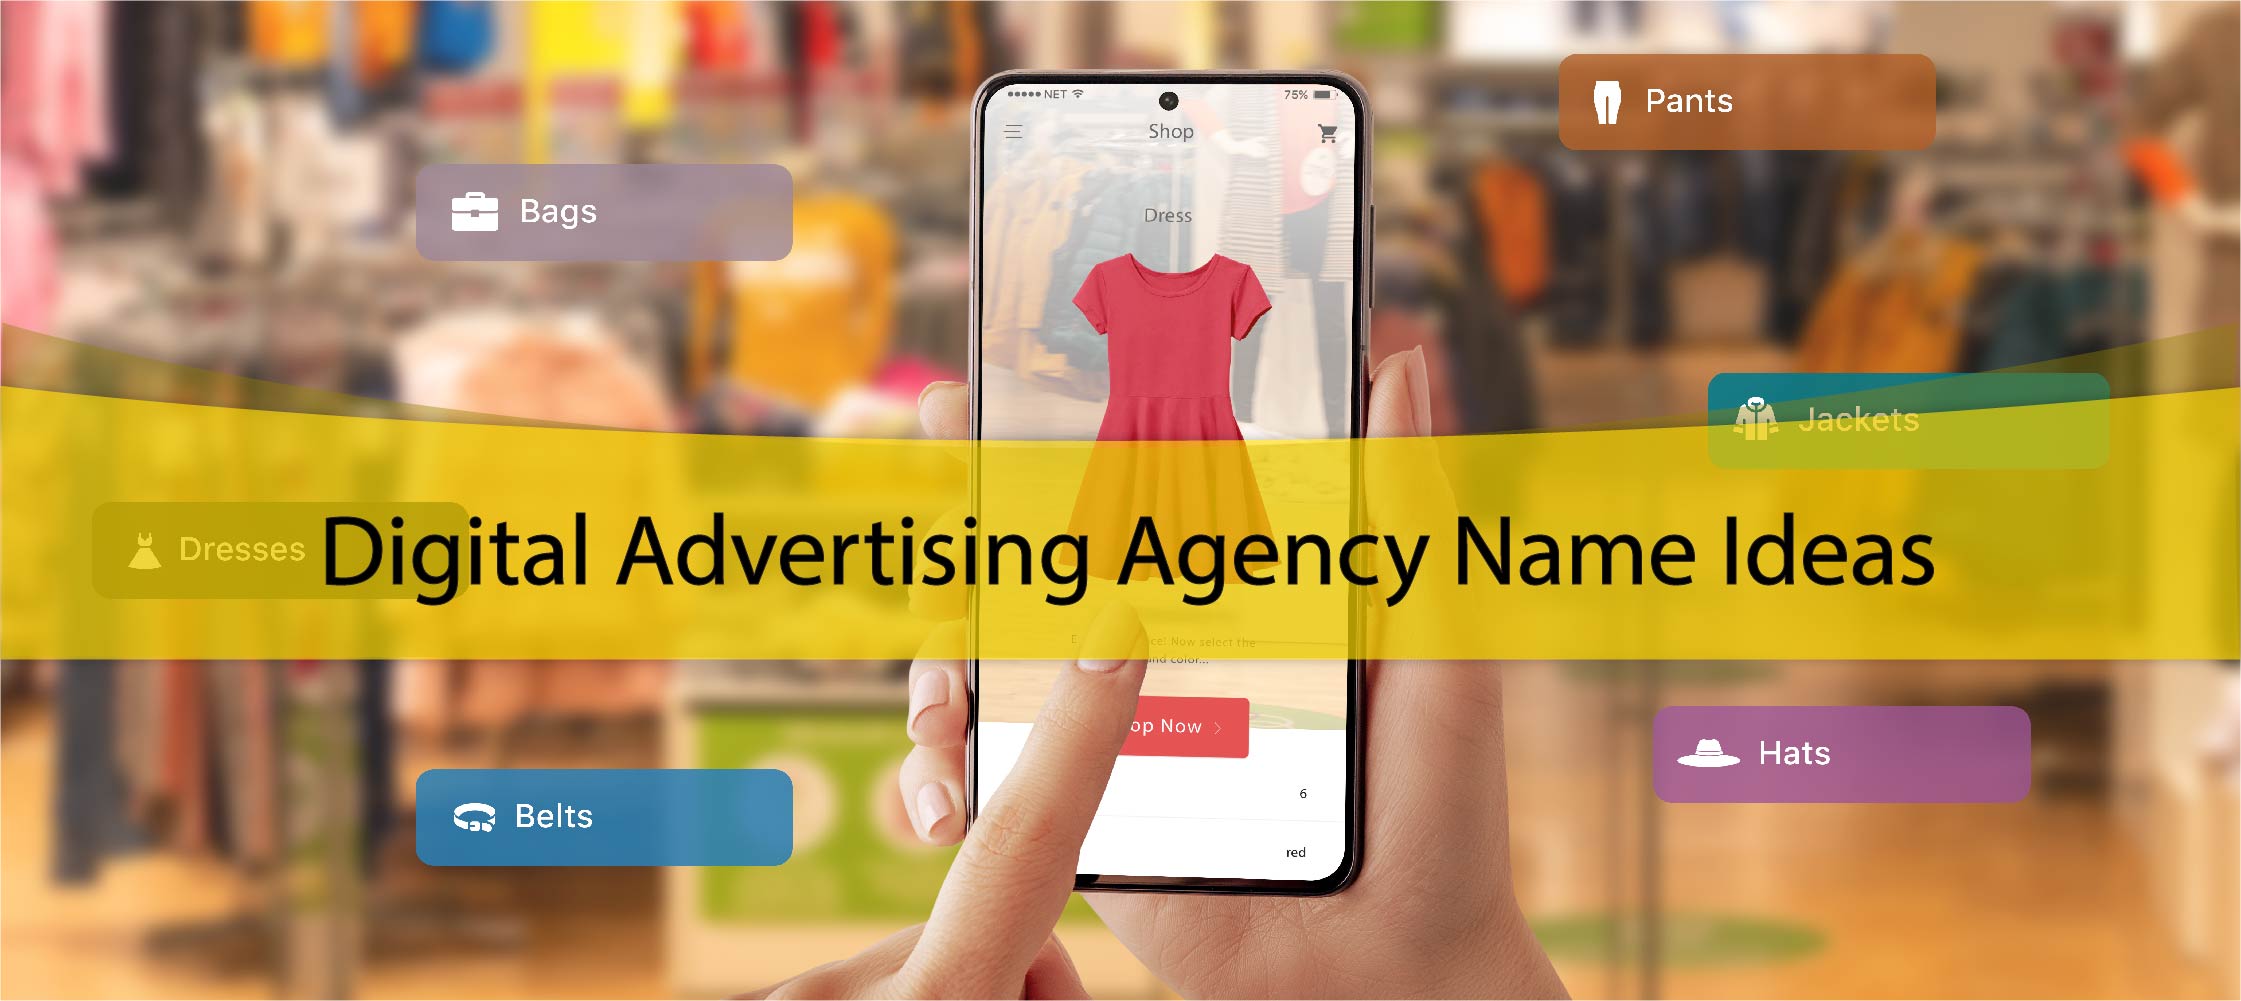 Digital Advertising Agency Name Ideas